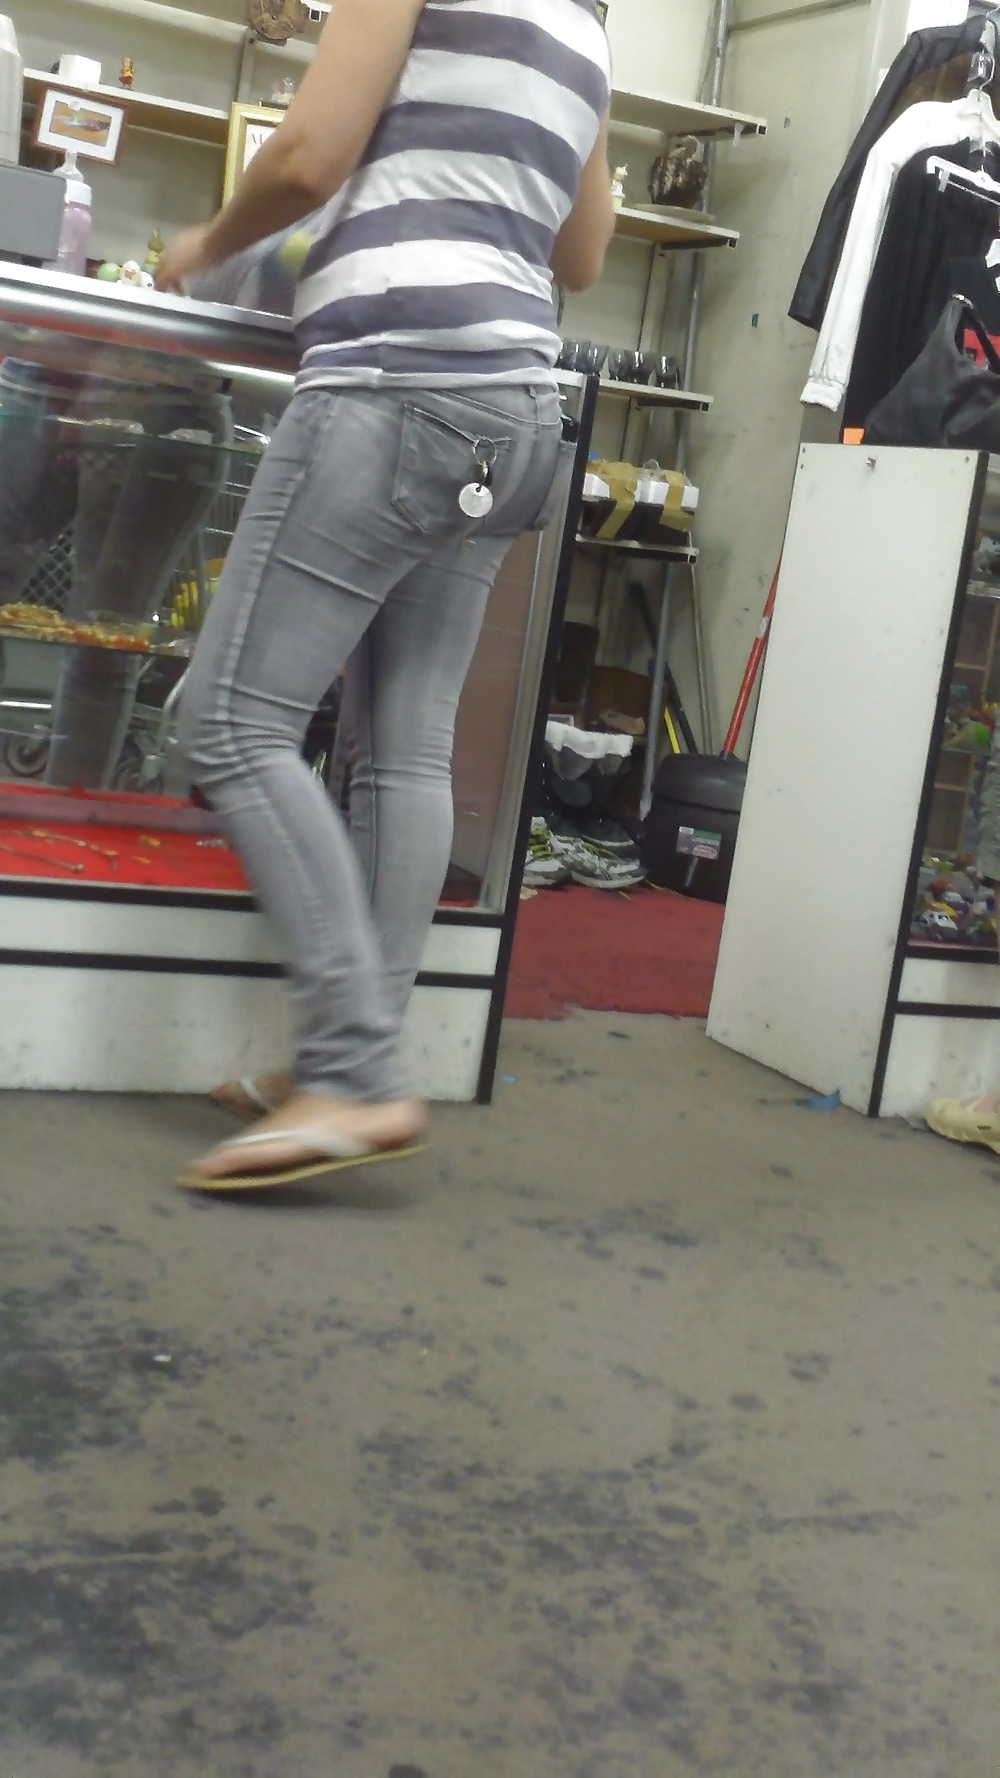 Popular teen girls butts & ass in jeans #21496738